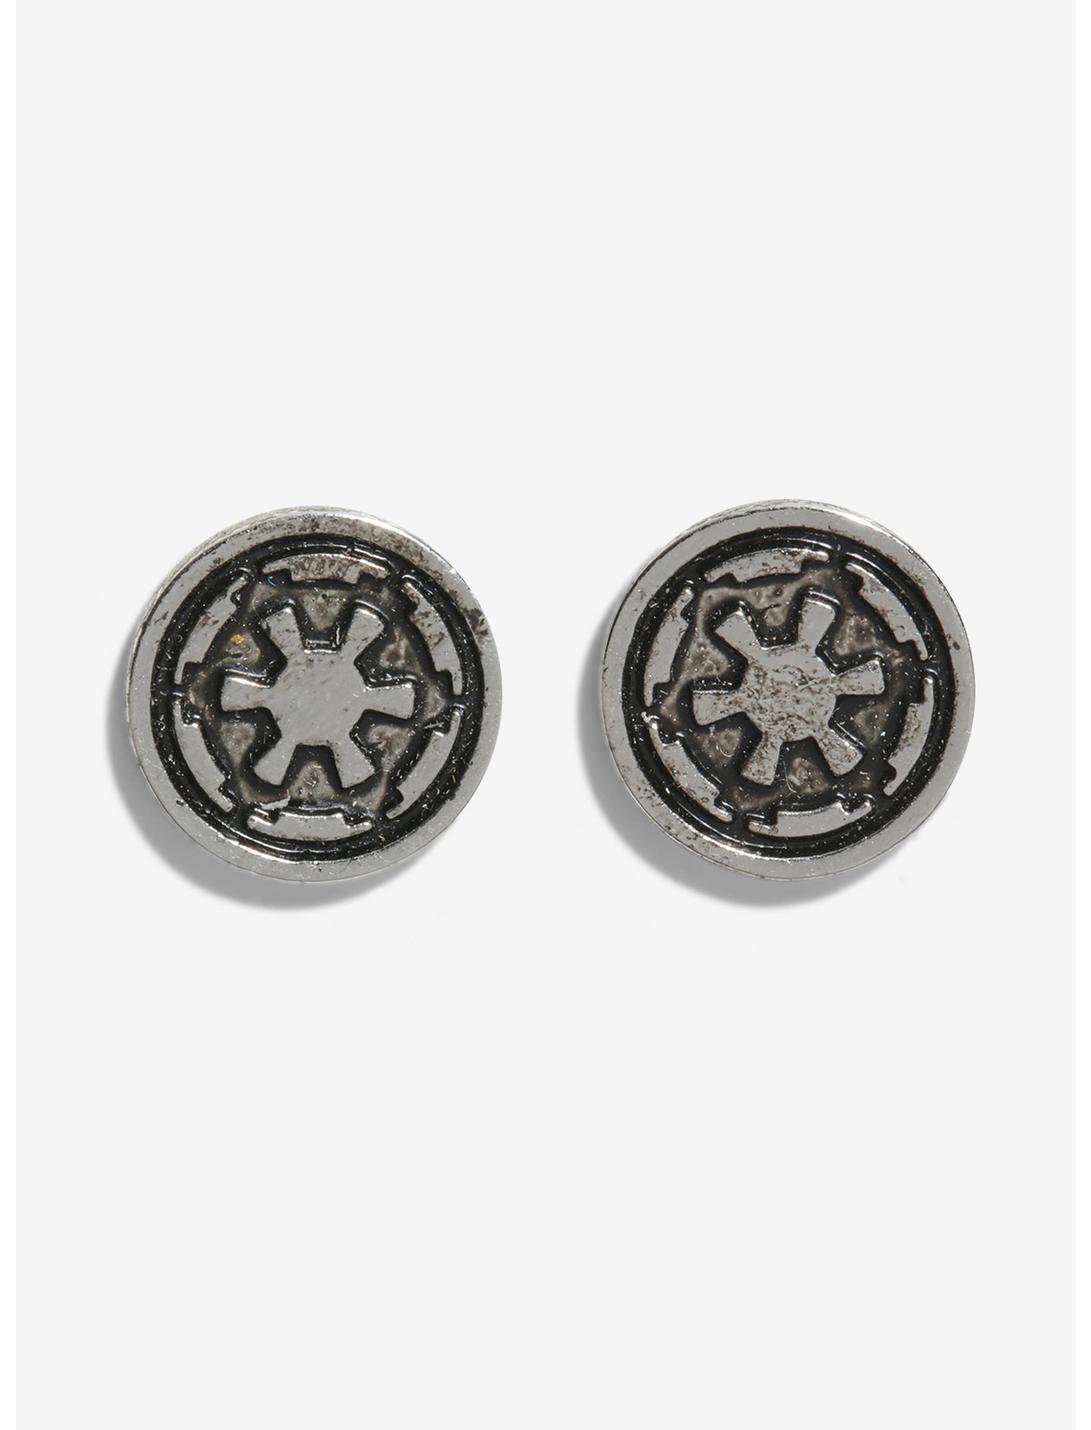 Star Wars Imperial Logo Stud Earrings, , hi-res